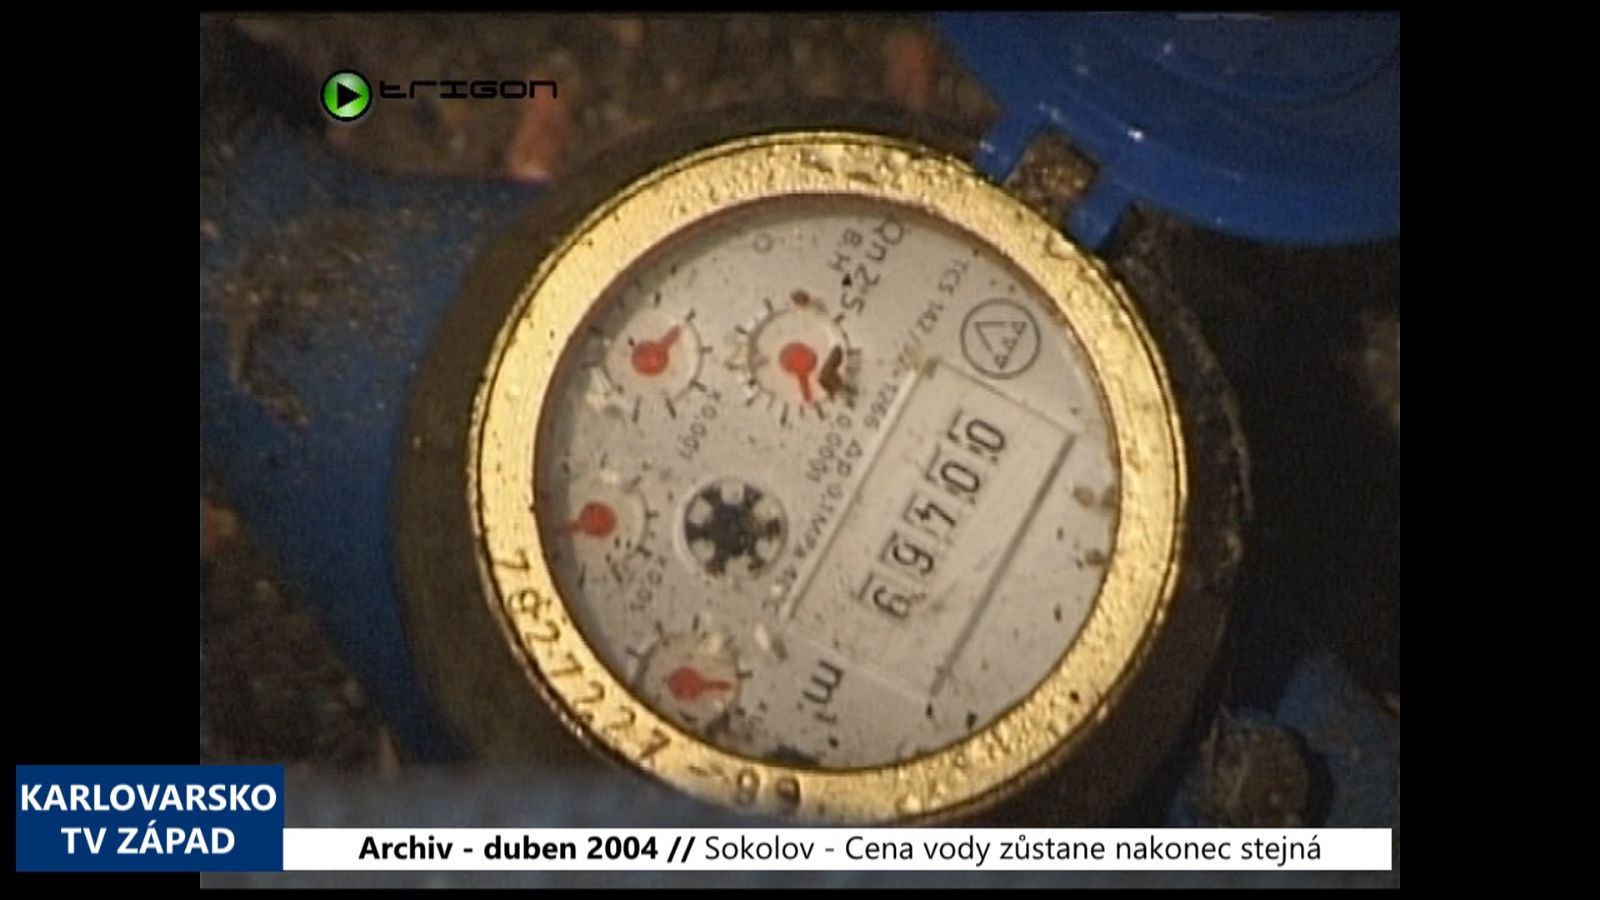 2004 – Sokolov: Cena vody zůstane nakonec stejná (TV Západ)